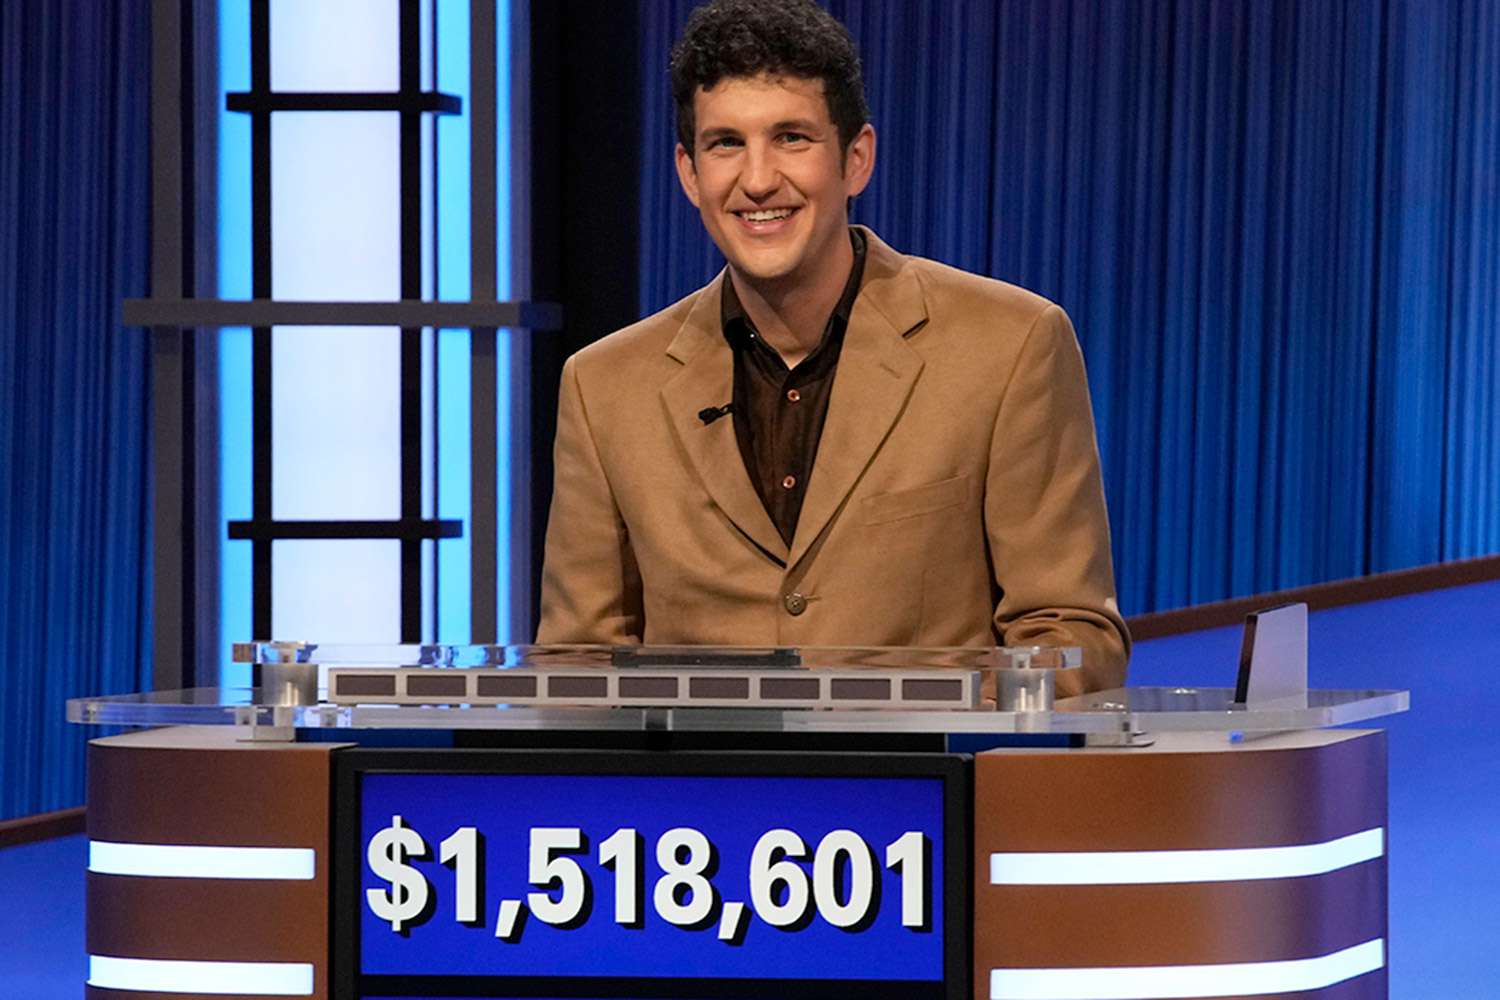 Jeopardy! Champion Matt Amodio